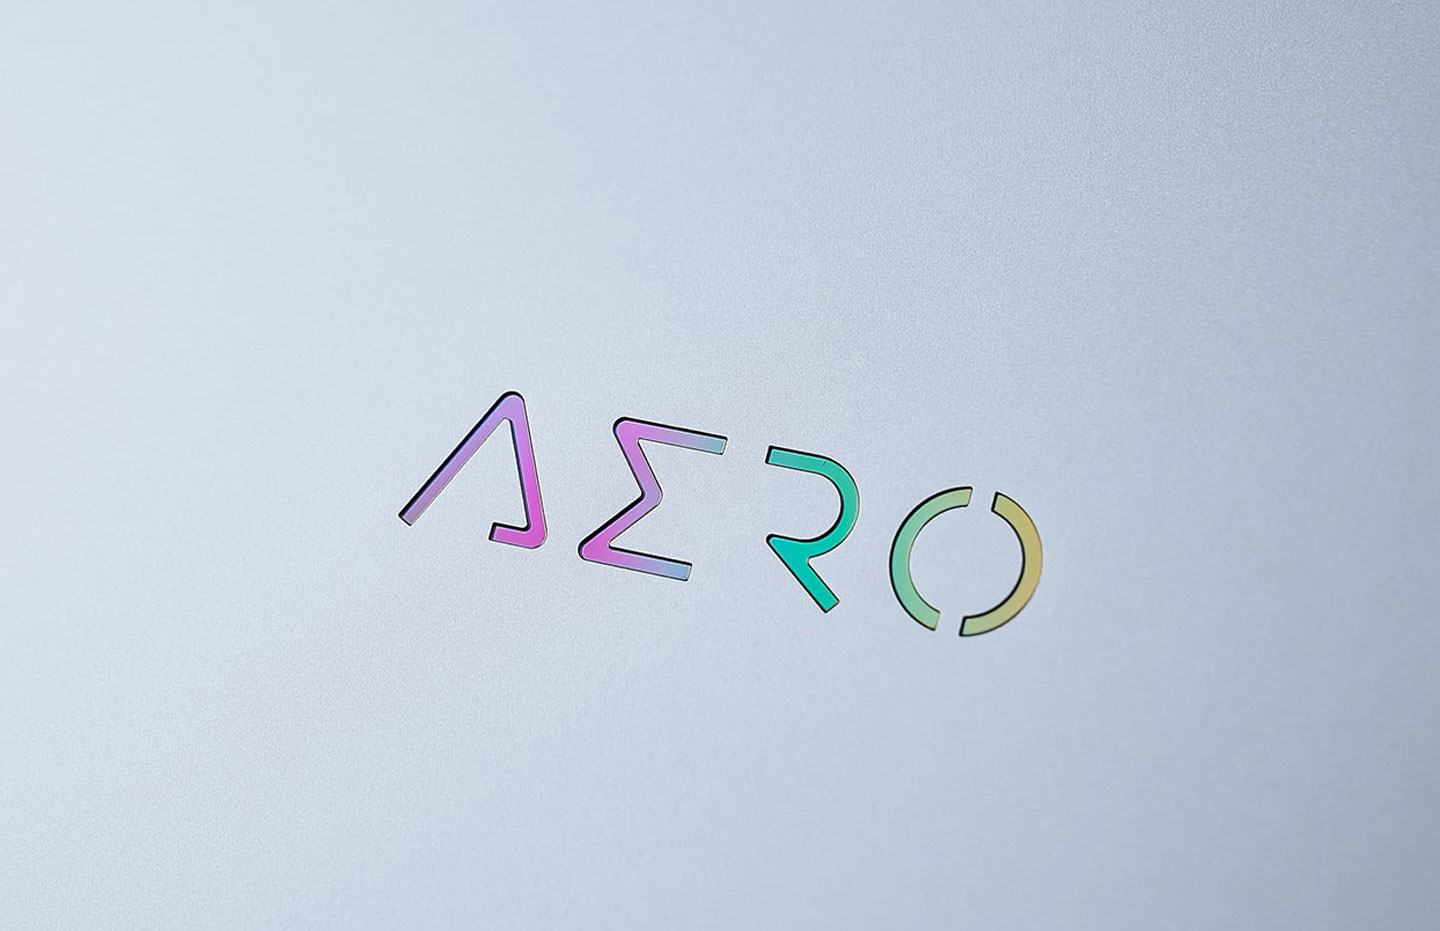 今年 AERO 16 OLED 上蓋的 LOGO 多了一些變化－炫彩元素在不同角度呈現出豐富的變化。